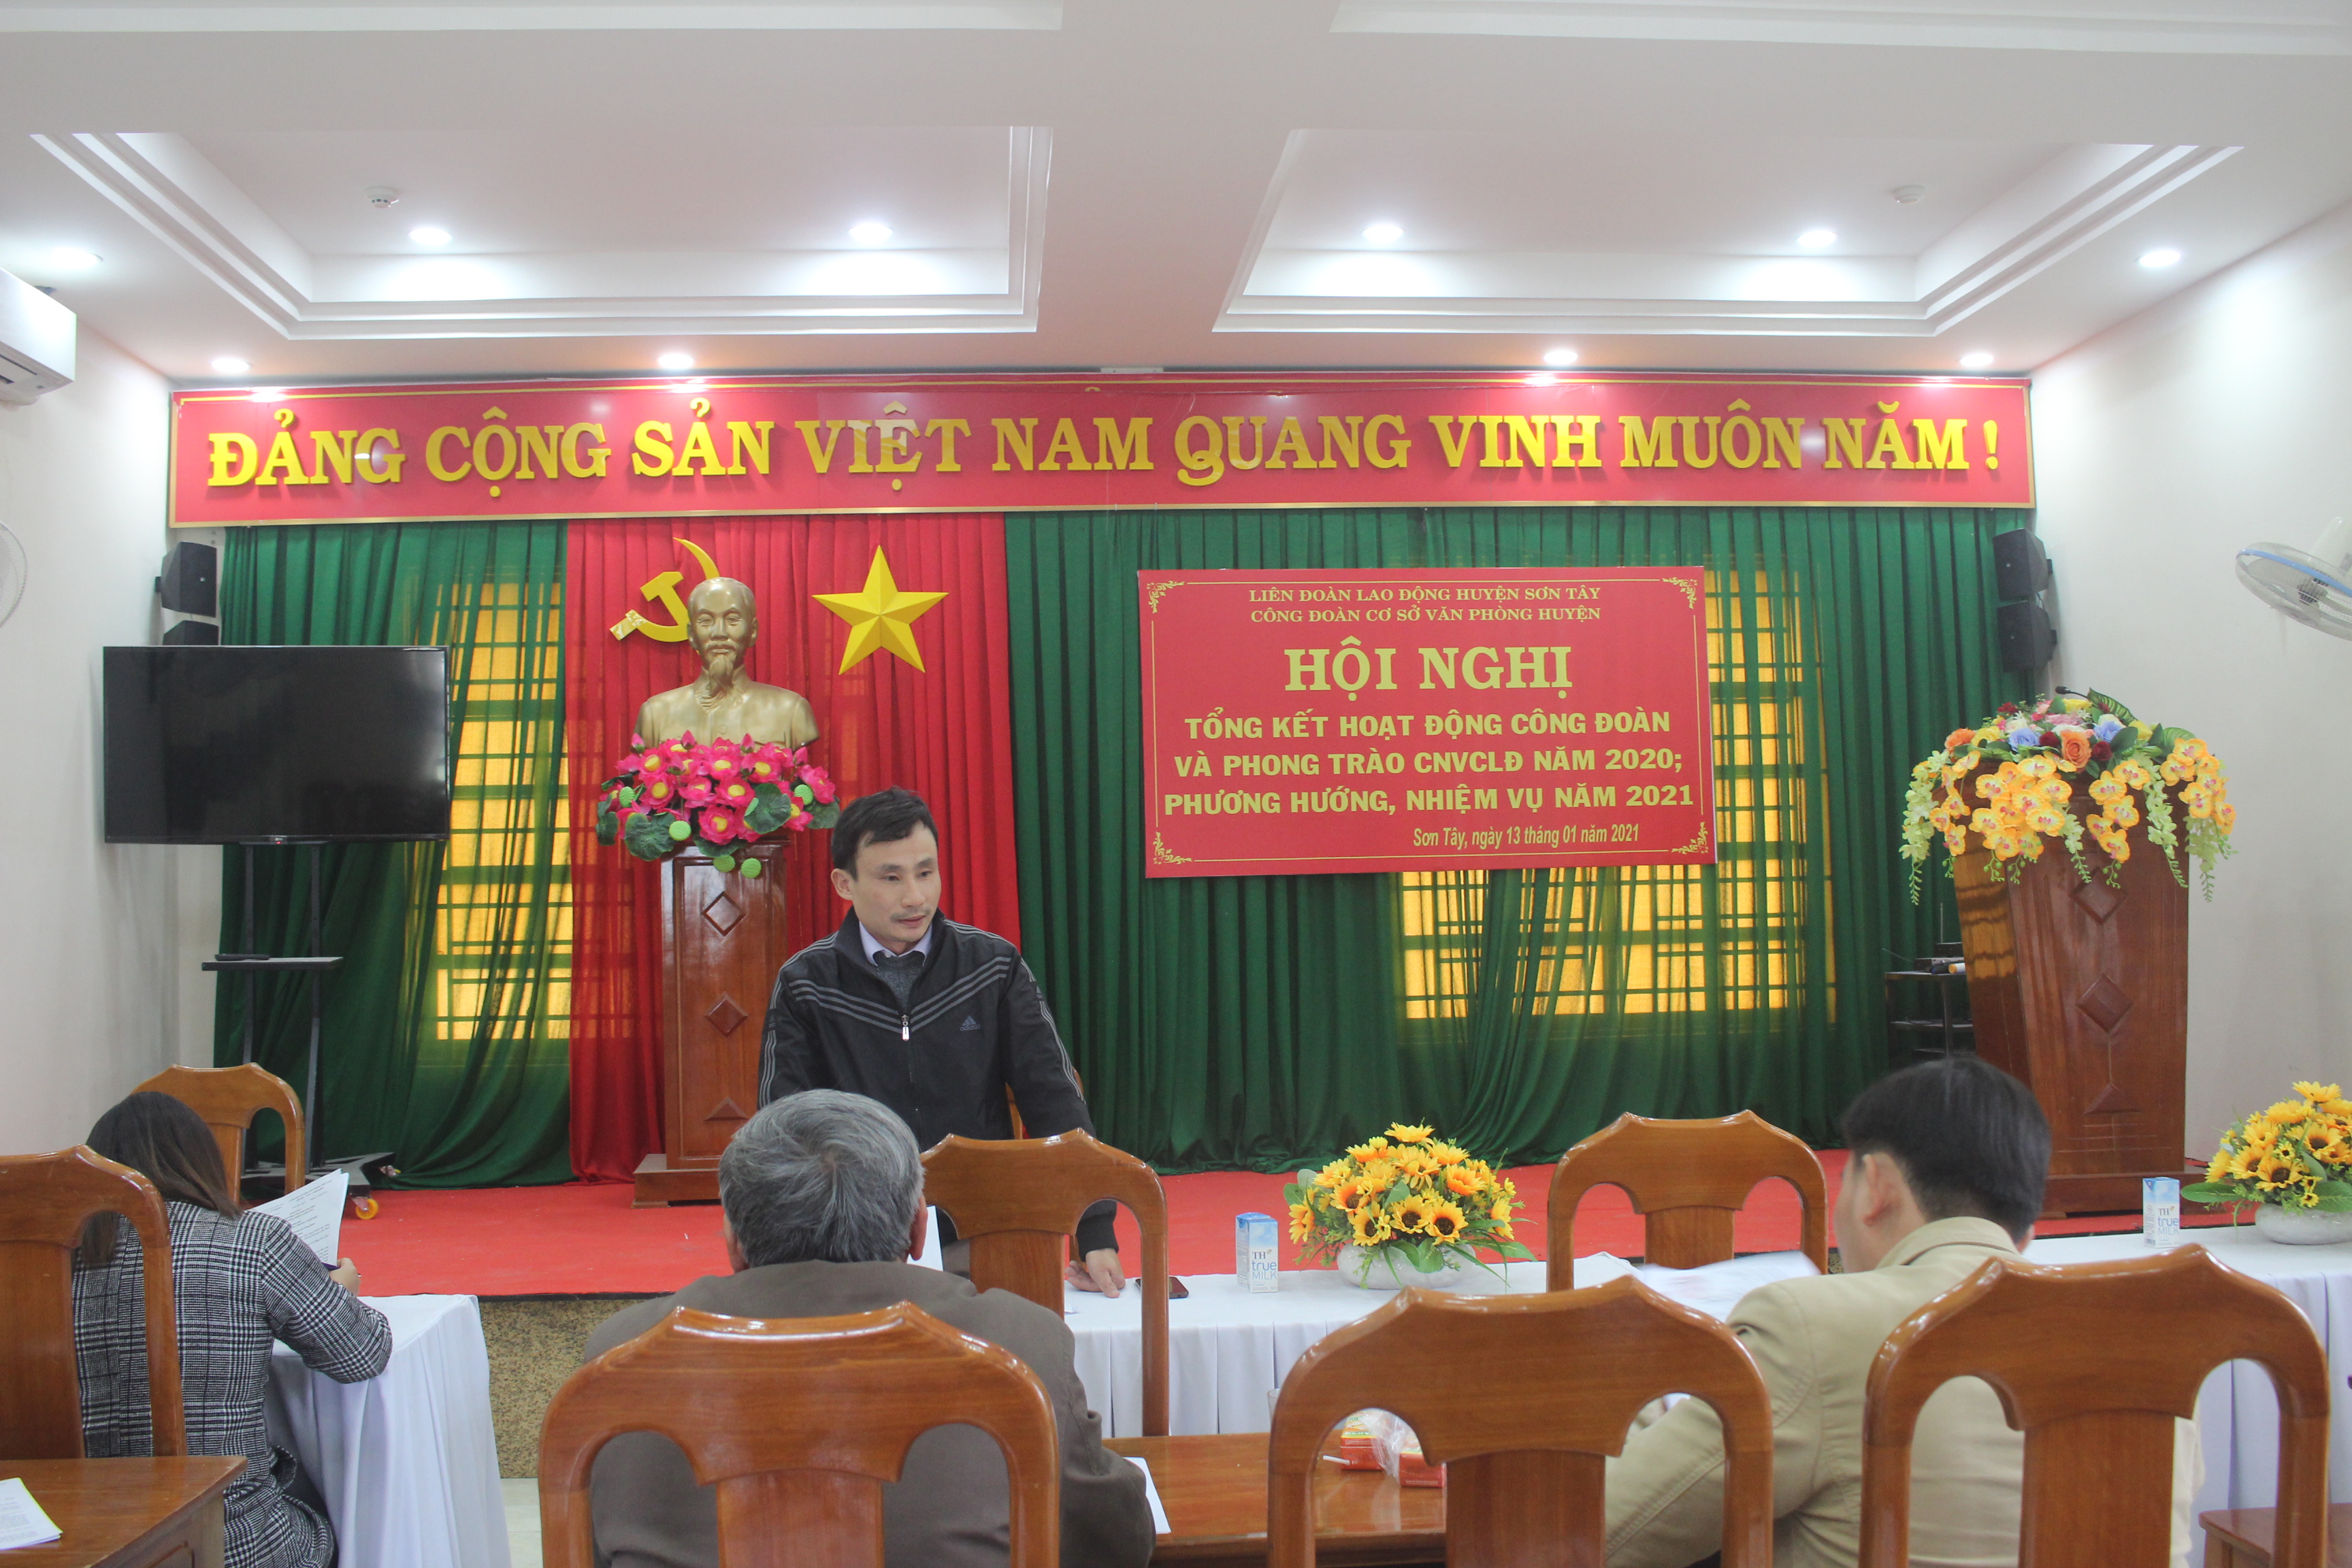 Văn phòng huyện Sơn Tây tổng kết hoạt động công đoàn năm 2020